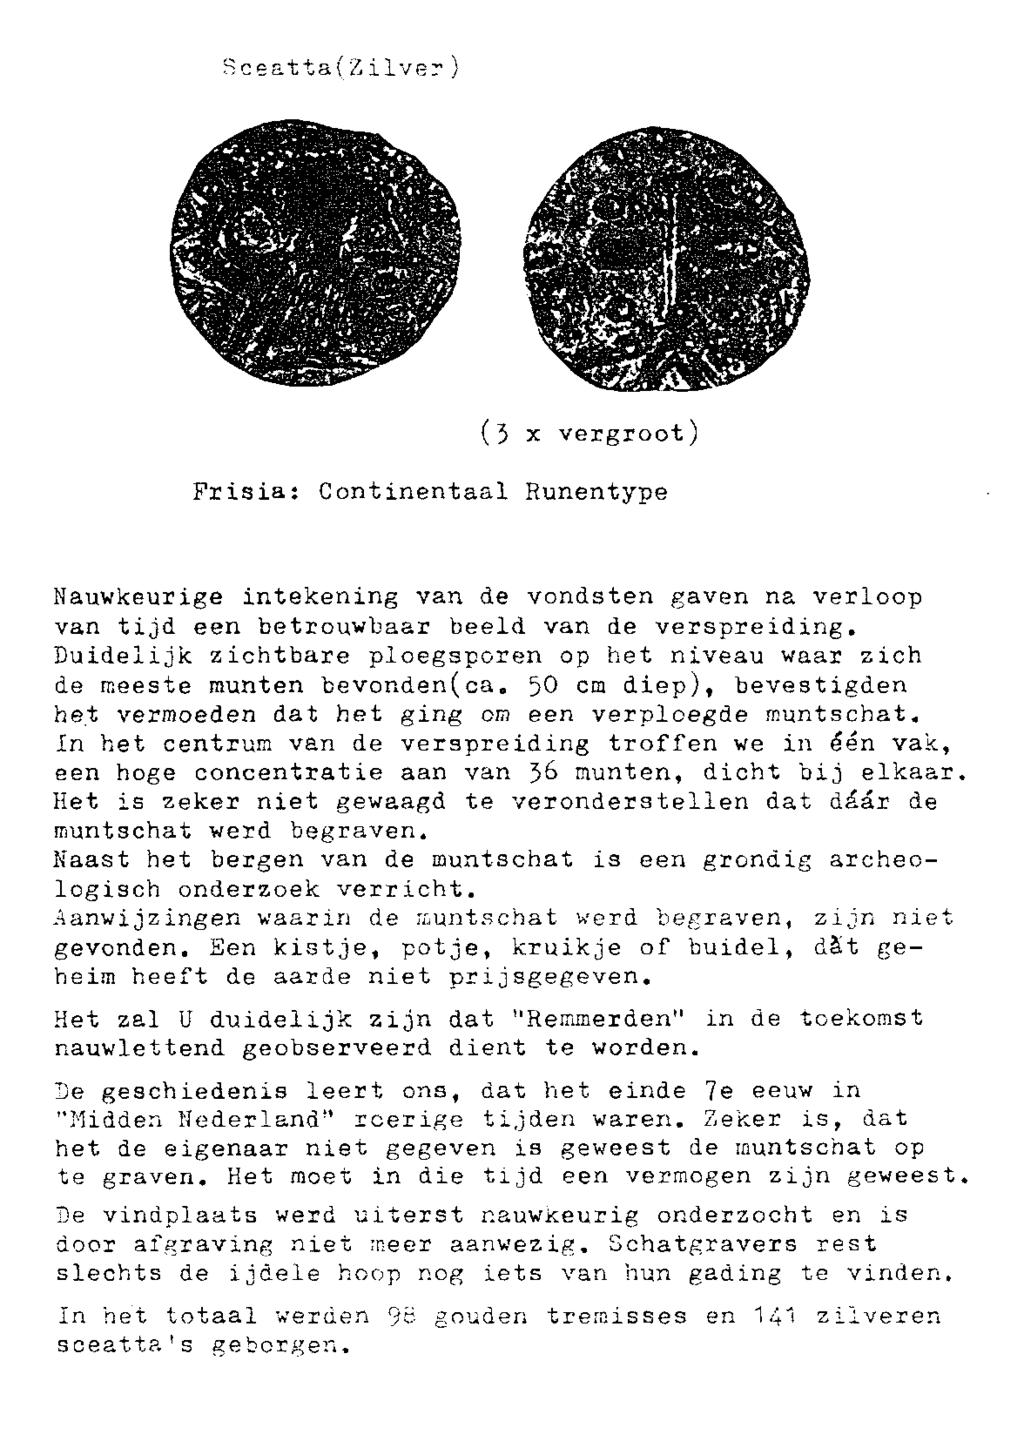 SceattalZilver) (3 x vergroot) Frisia: Continentaal Runentype Nauwkeurige intekening van de vondsten gaven na verloop van tijd een betrouwbaar beeld van de verspreiding.